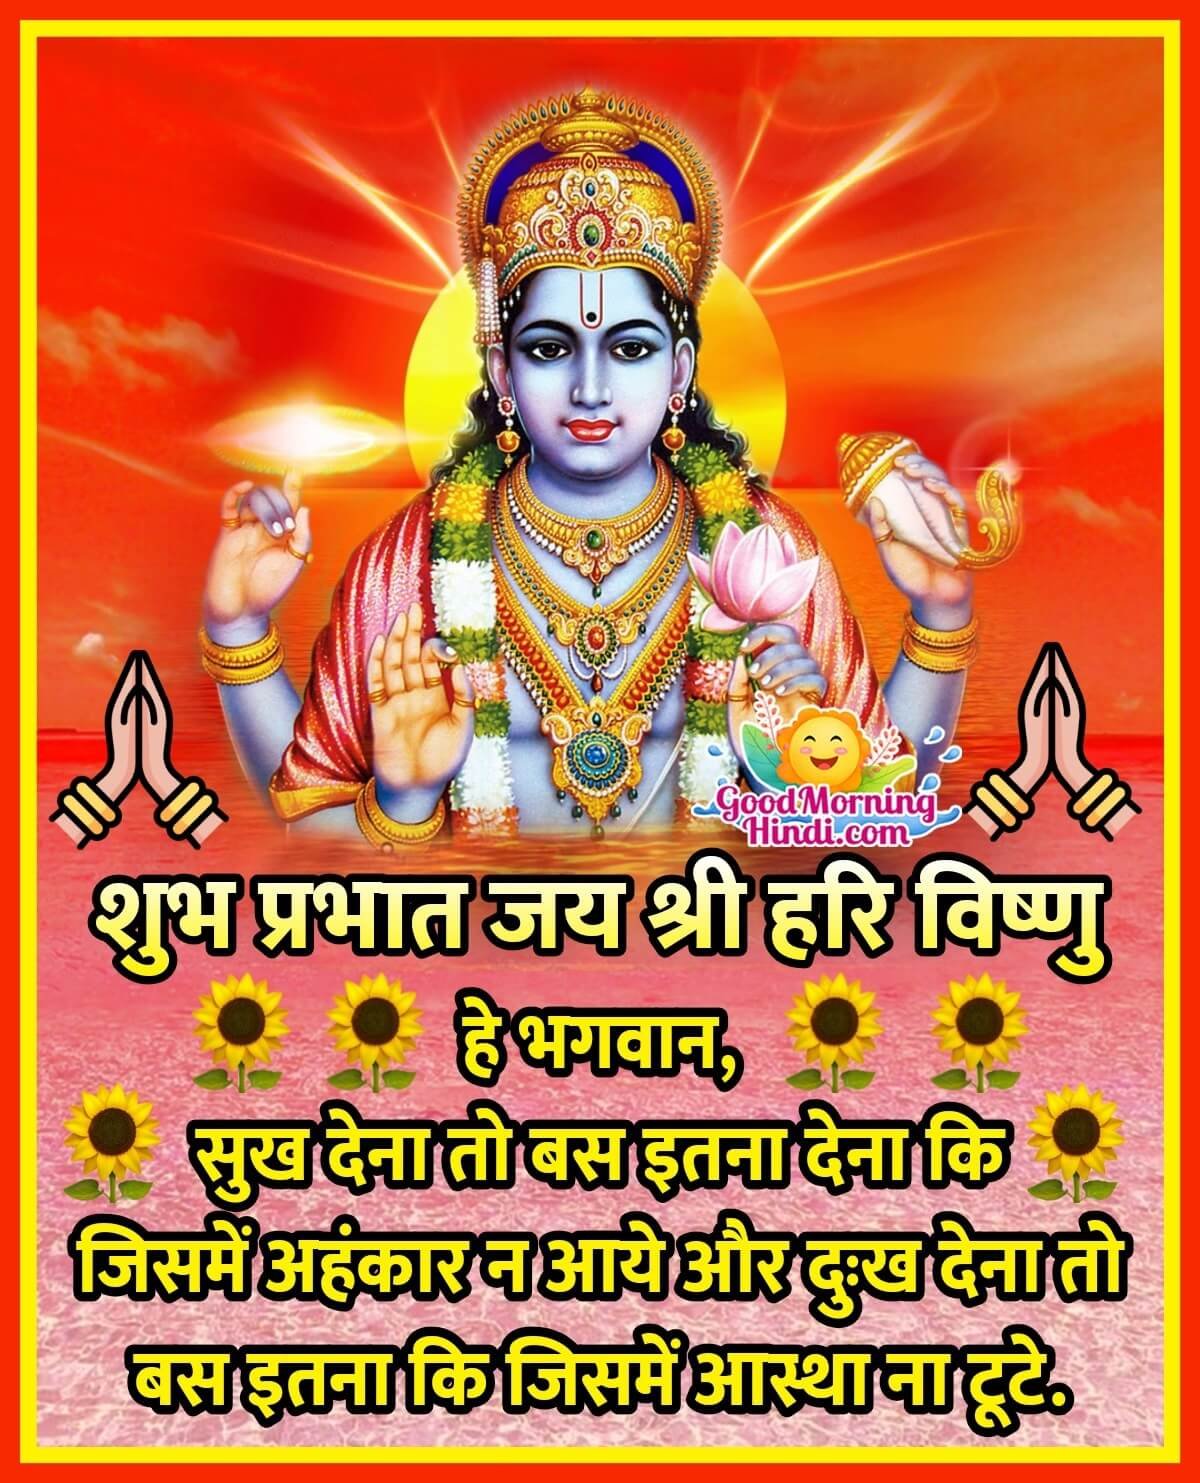 Good Morning Shri Vishnu Images In Hindi